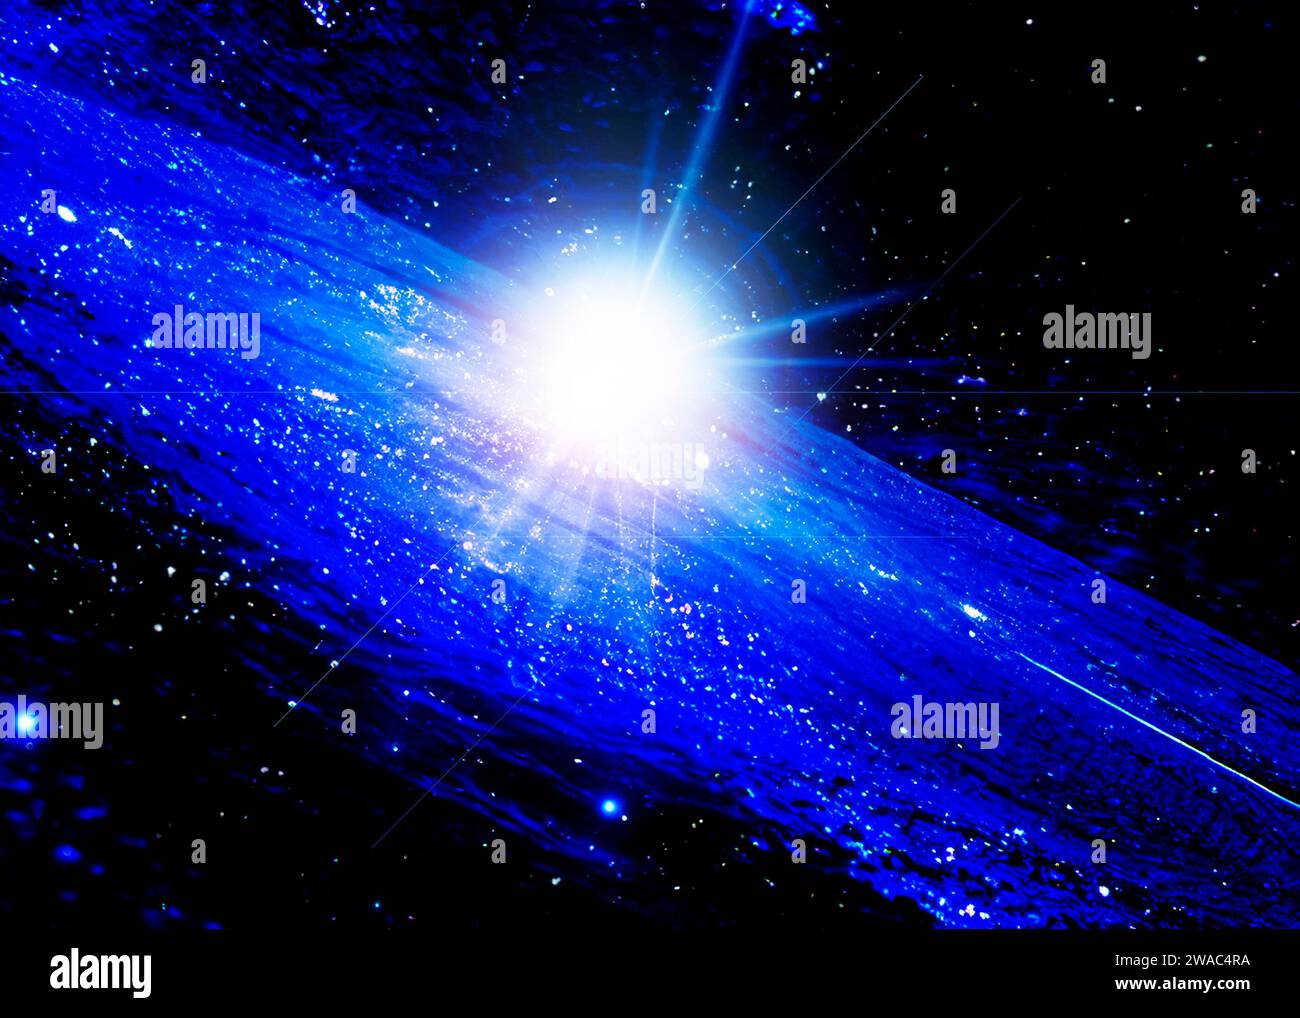 Illustration d'une supernova explosant dans une galaxie Banque D'Images